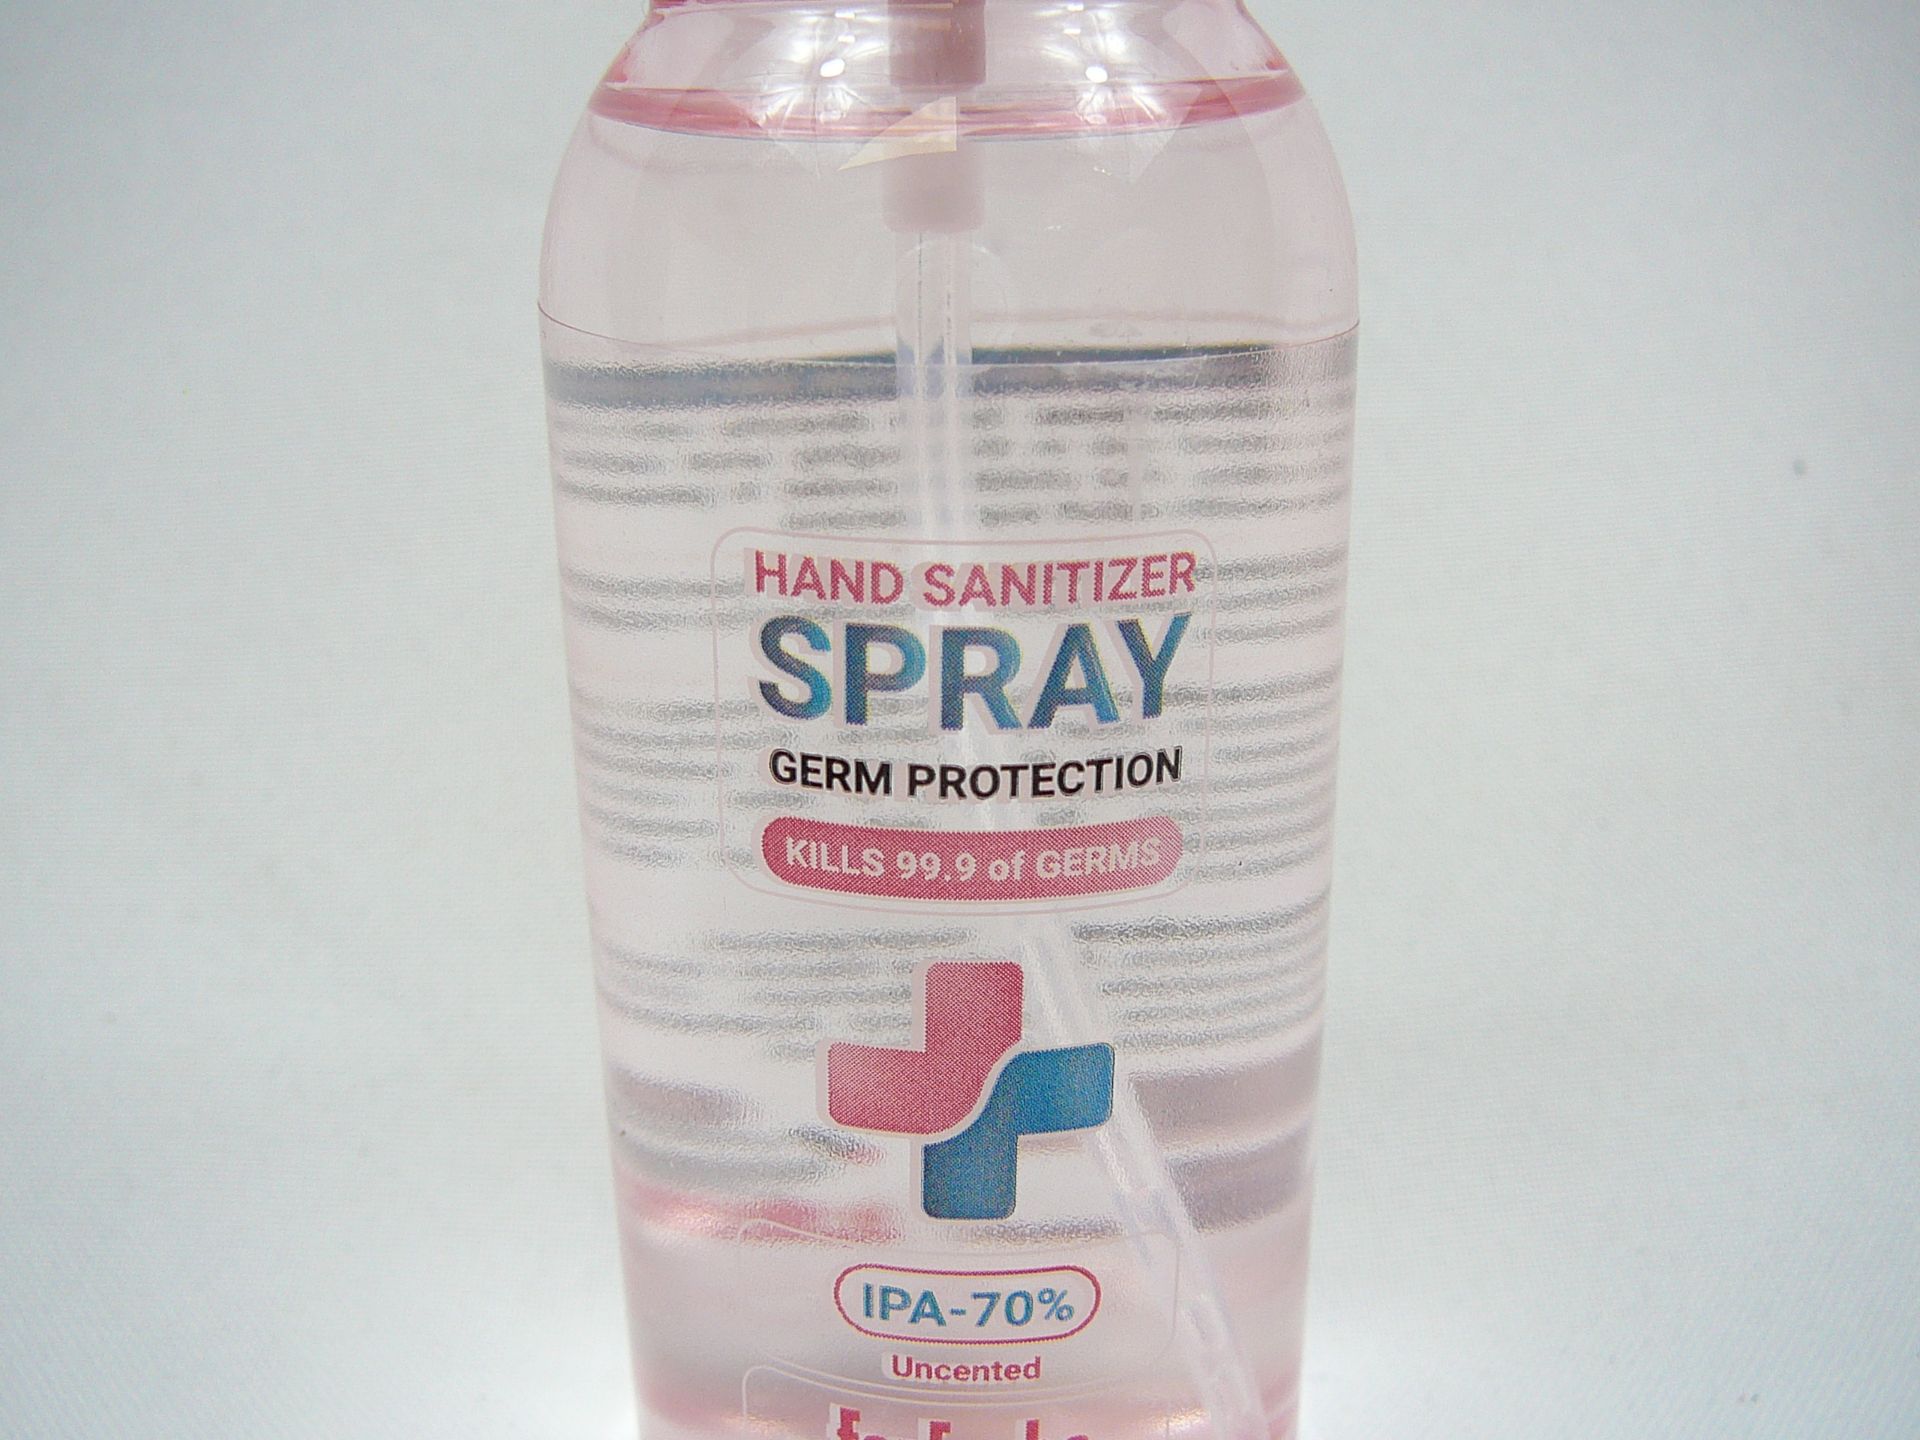 1200 bottles (100ml) hand sanitiser - Image 3 of 4